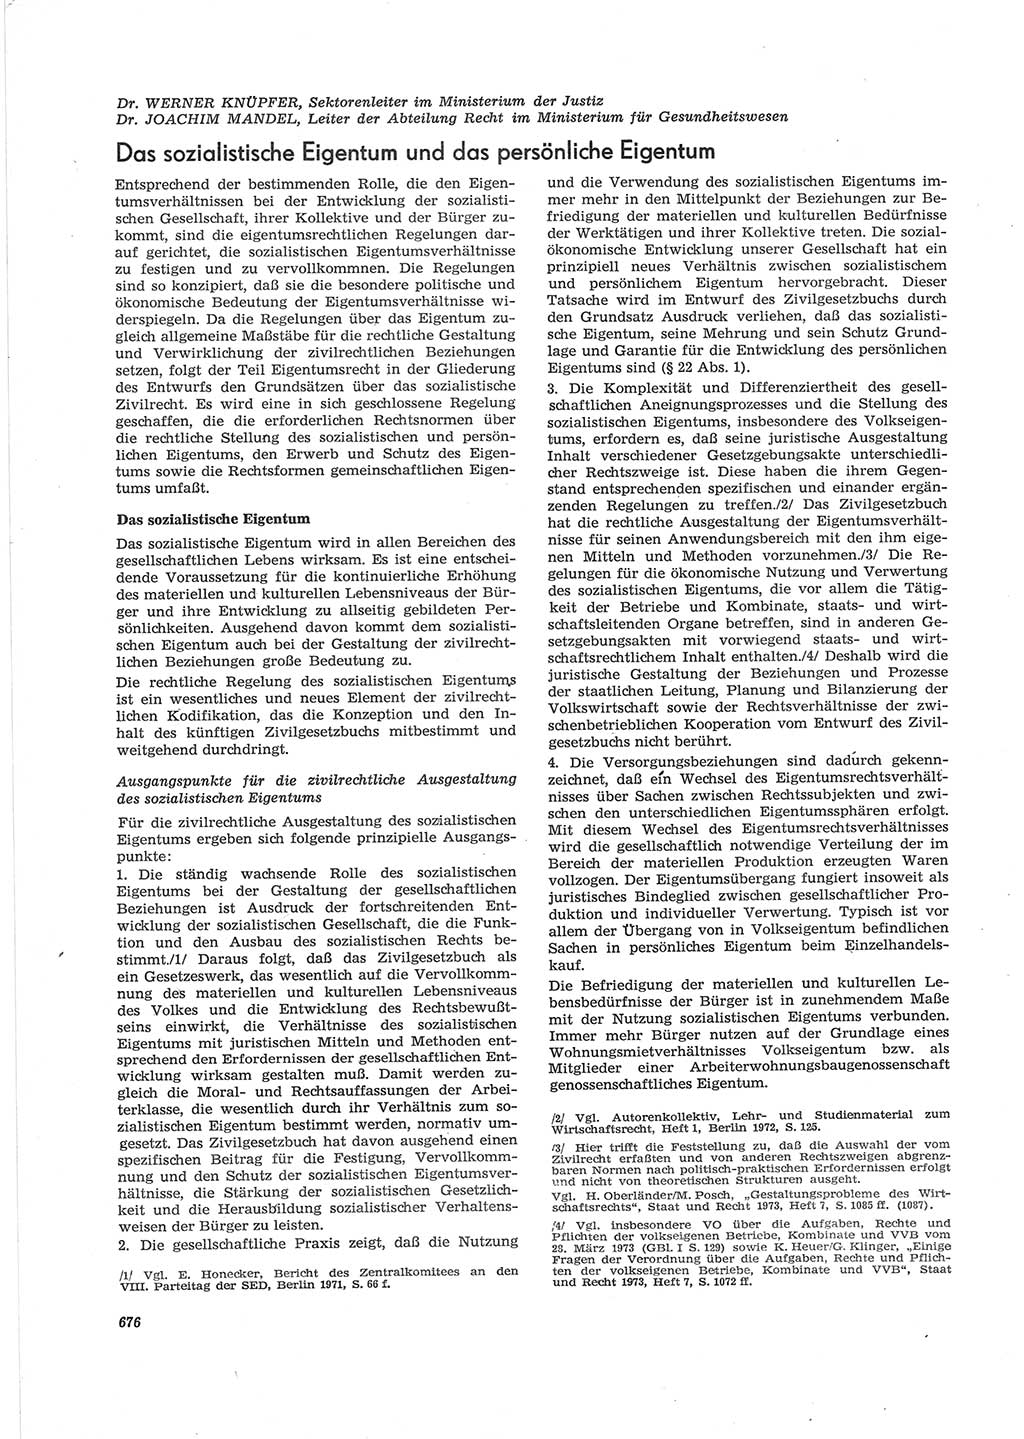 Neue Justiz (NJ), Zeitschrift für Recht und Rechtswissenschaft [Deutsche Demokratische Republik (DDR)], 28. Jahrgang 1974, Seite 676 (NJ DDR 1974, S. 676)